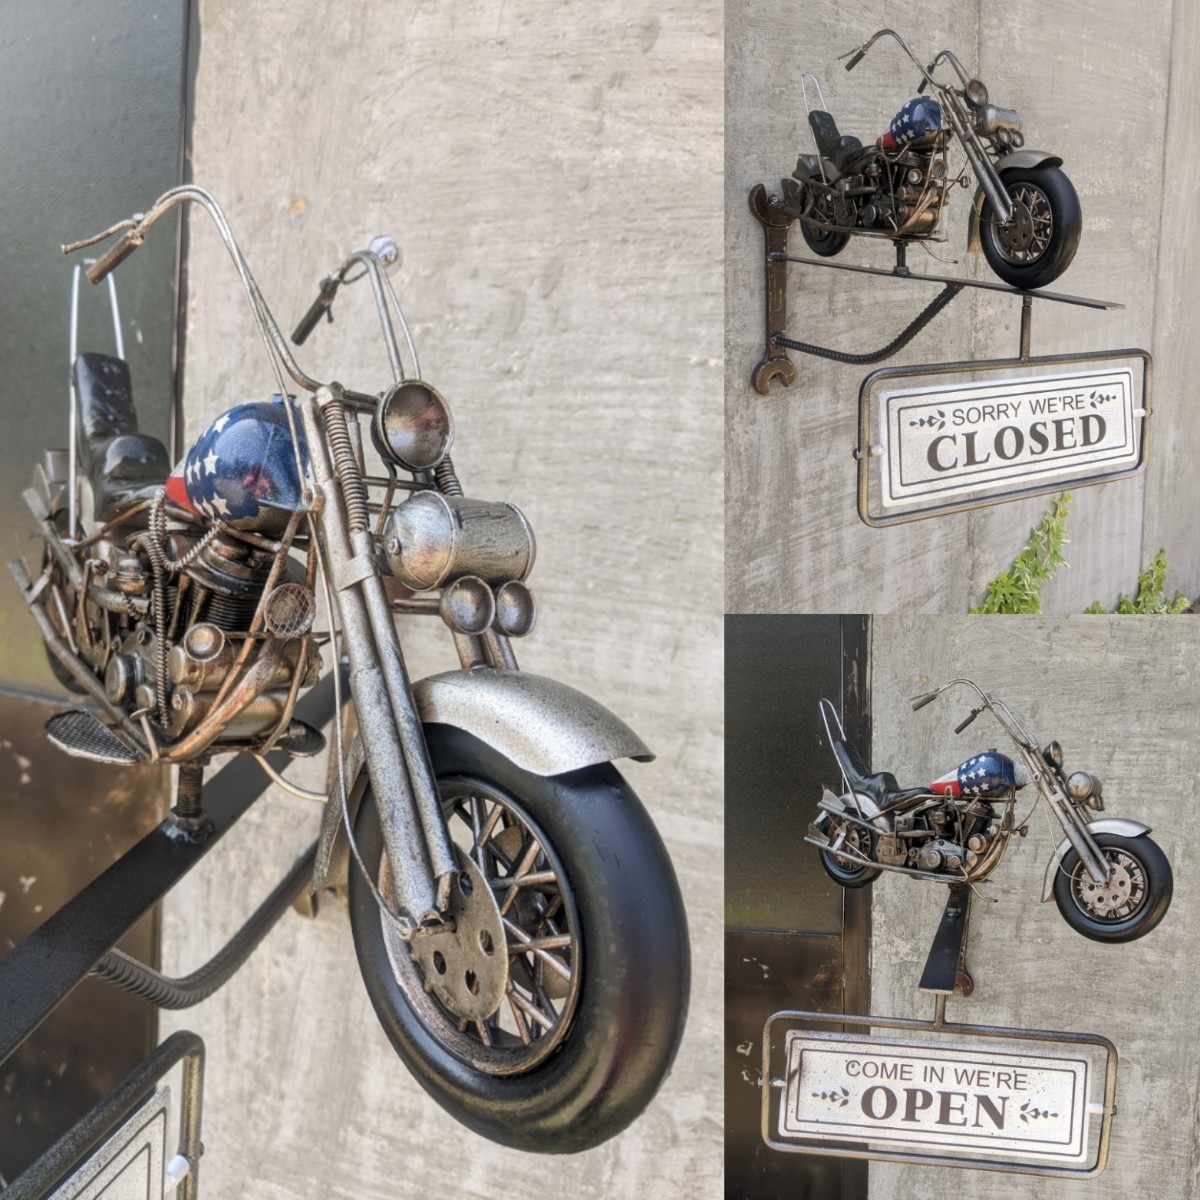  american мотоцикл мотоцикл магазин орнамент табличка OPEN&CLOSED автограф панель # гаечный ключ держатель # Harley Davidson магазин инвентарь гараж смешанные товары BASE